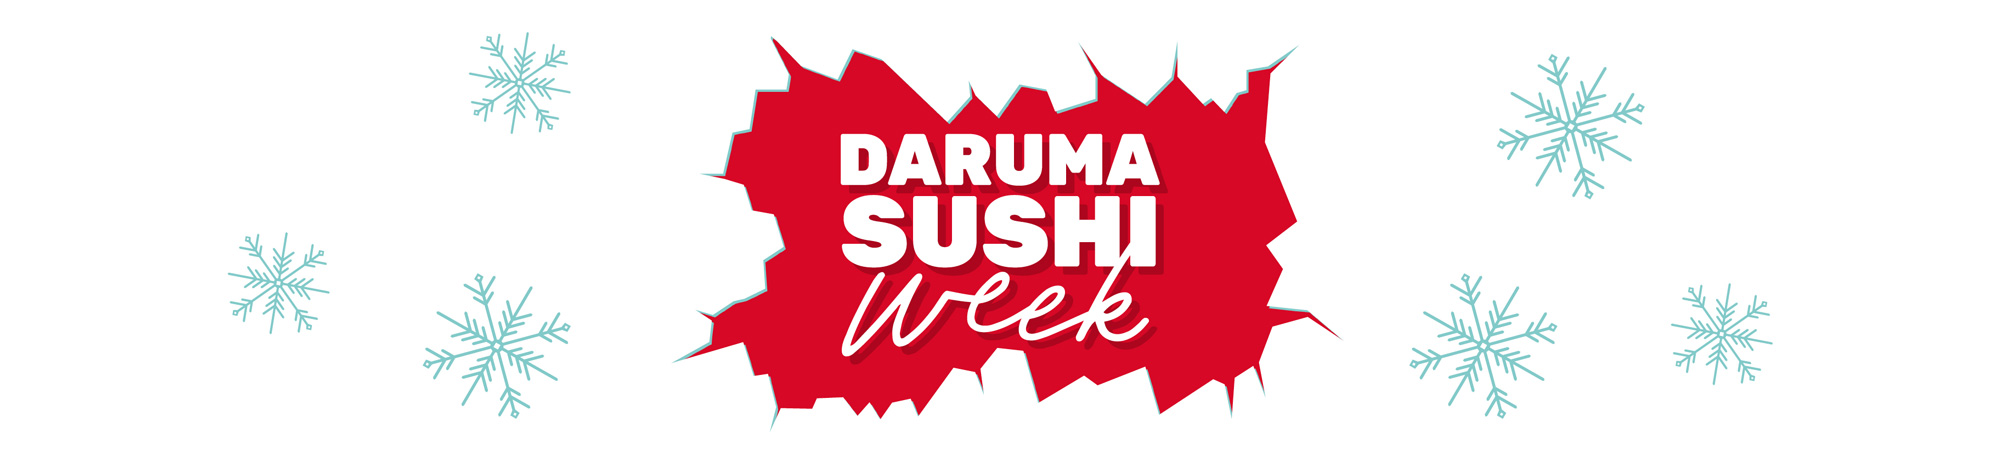 Daruma Week Header